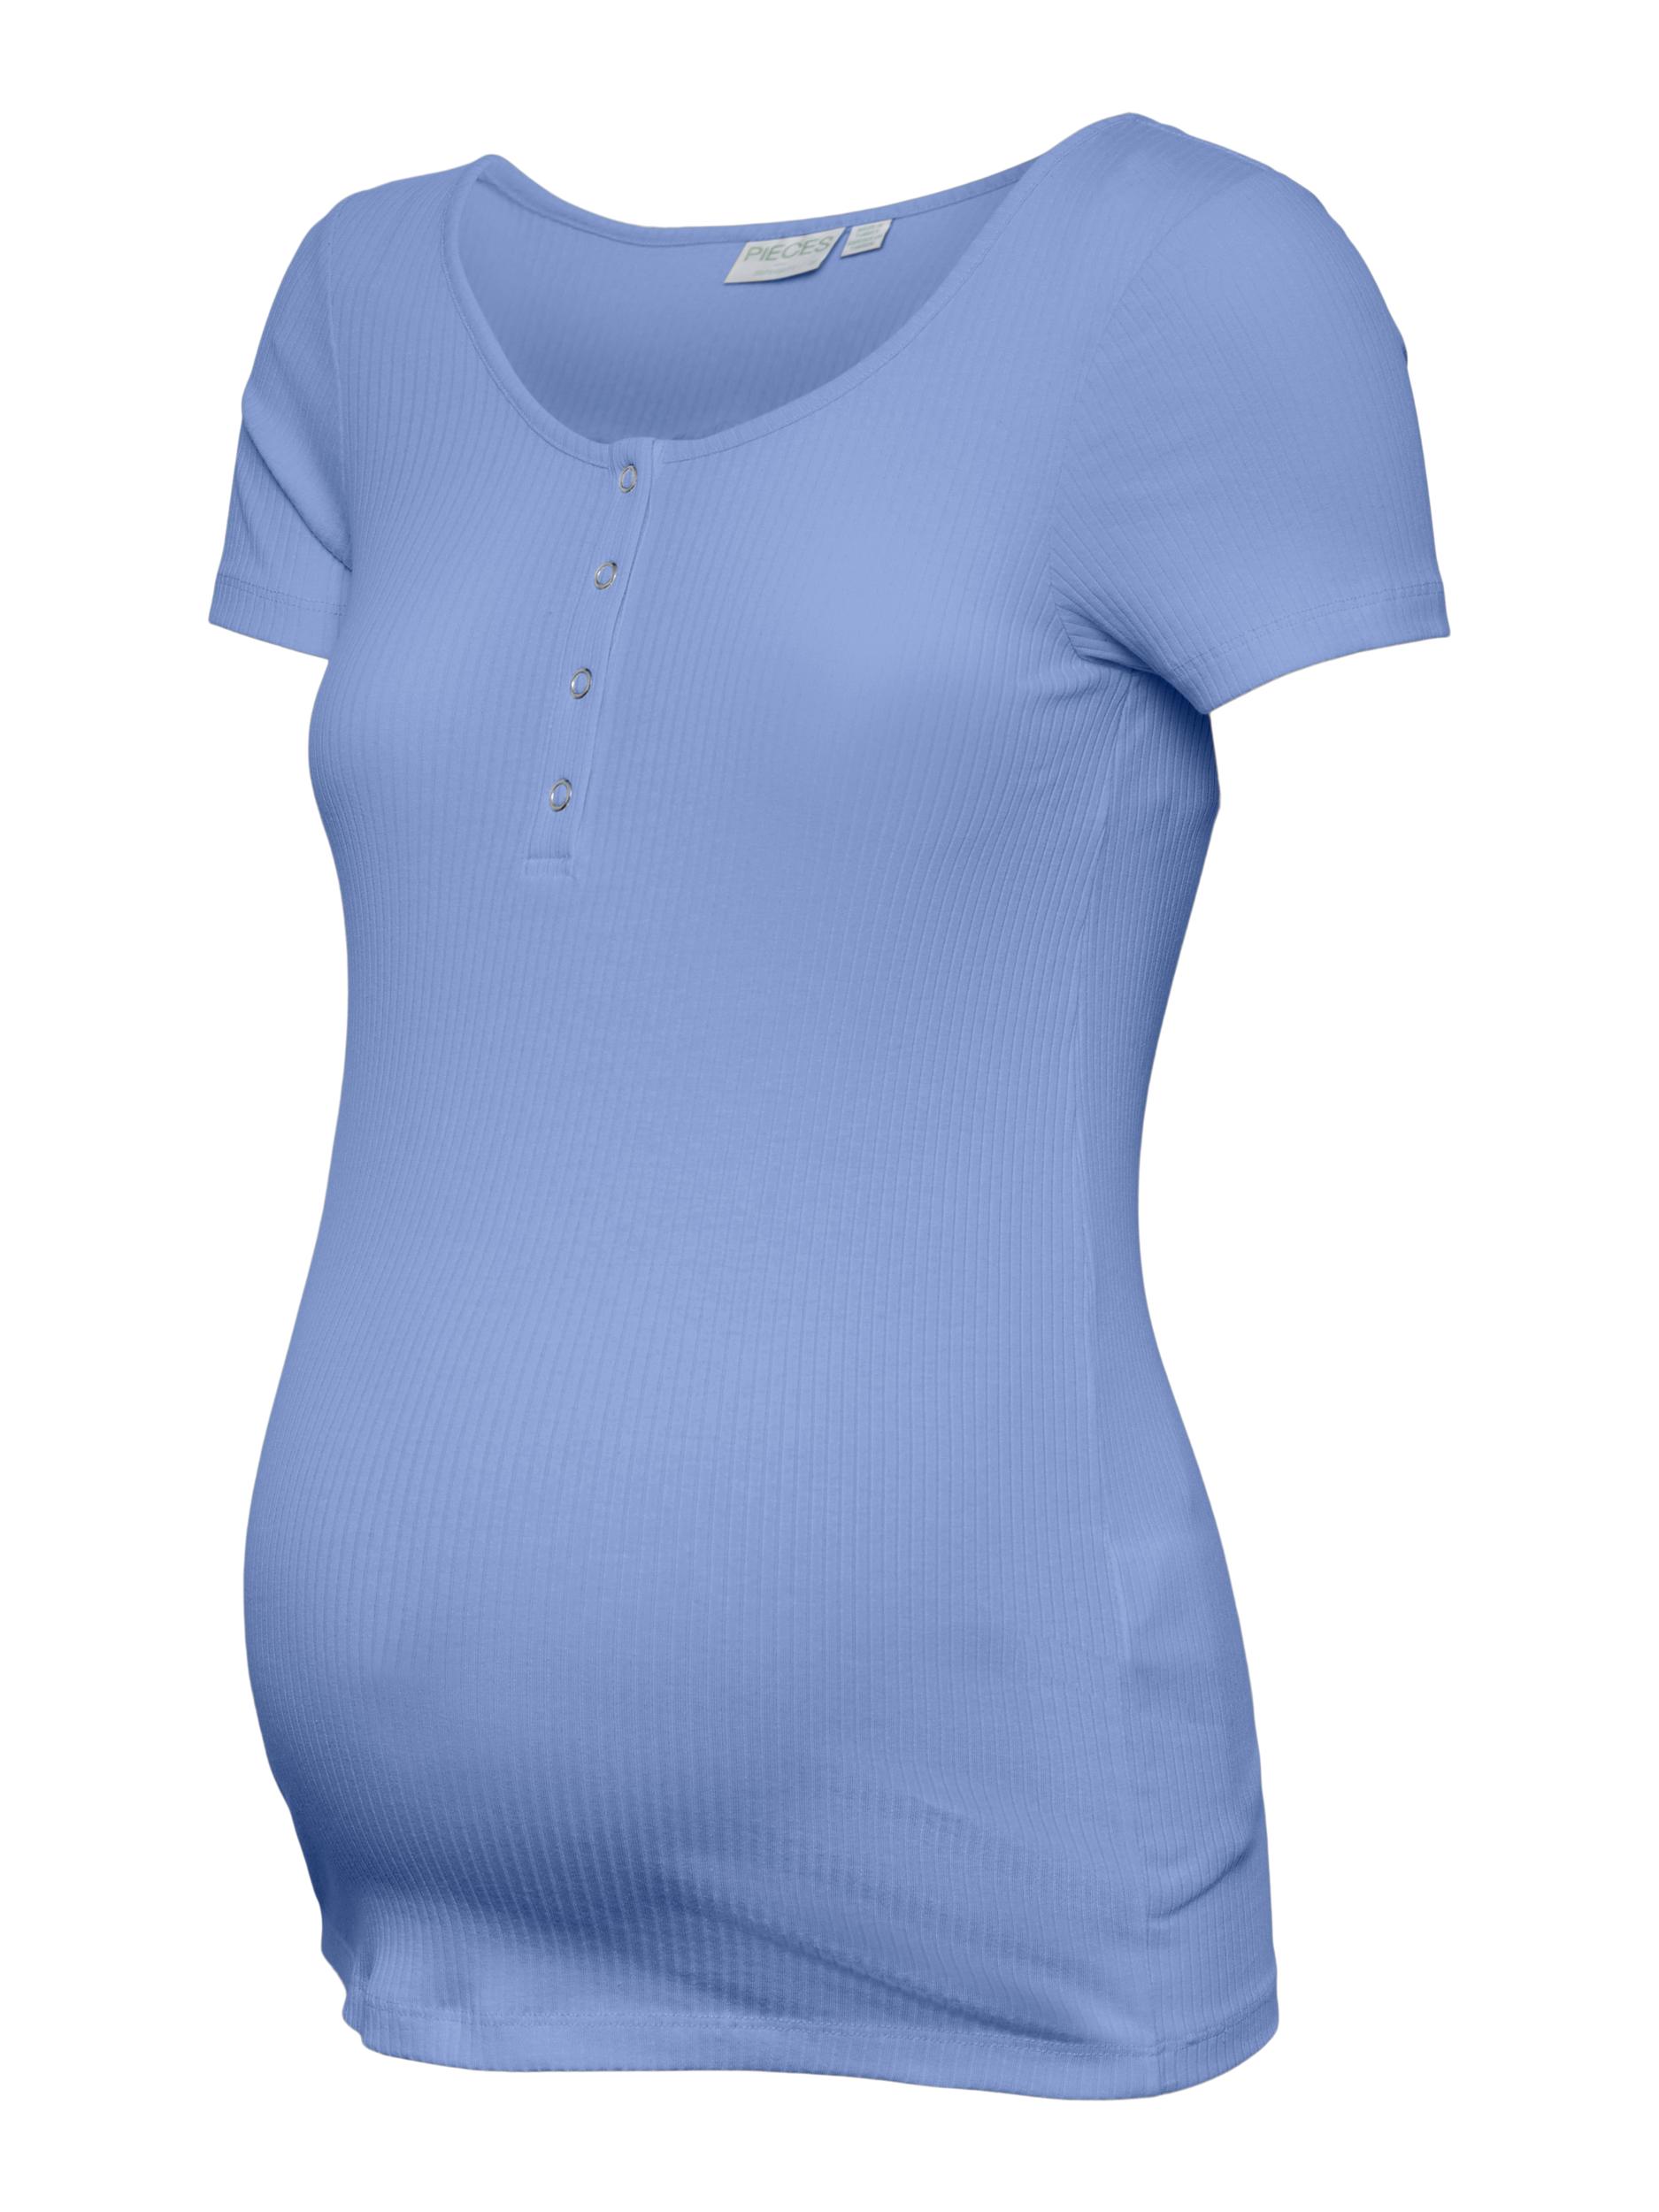 TXkow Koszulki & topy Pieces Maternity Koszulka Kitte w kolorze Granatowym 